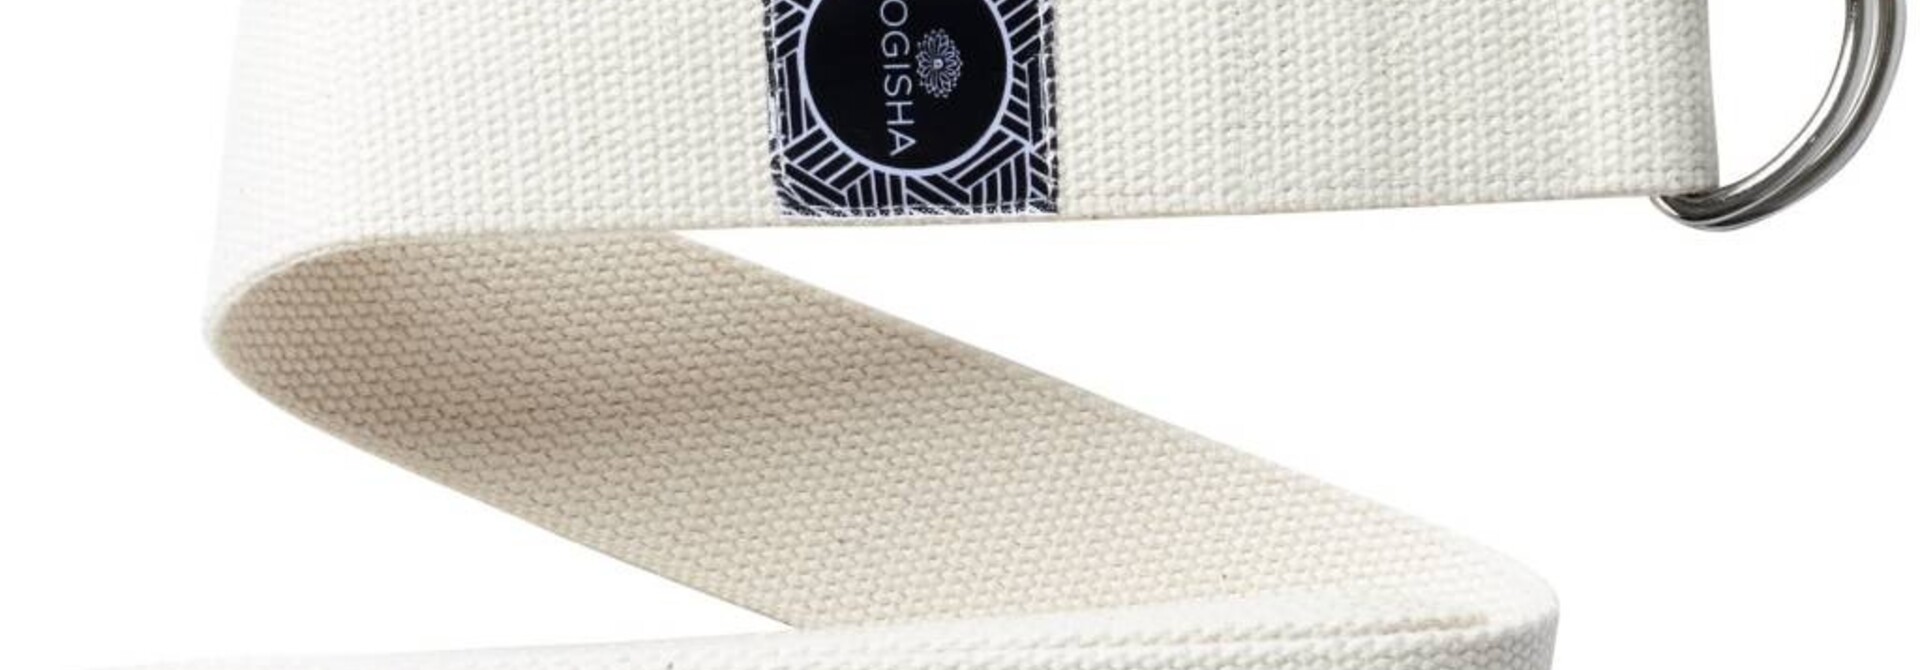 Yogisha Yoga Belt Cotton